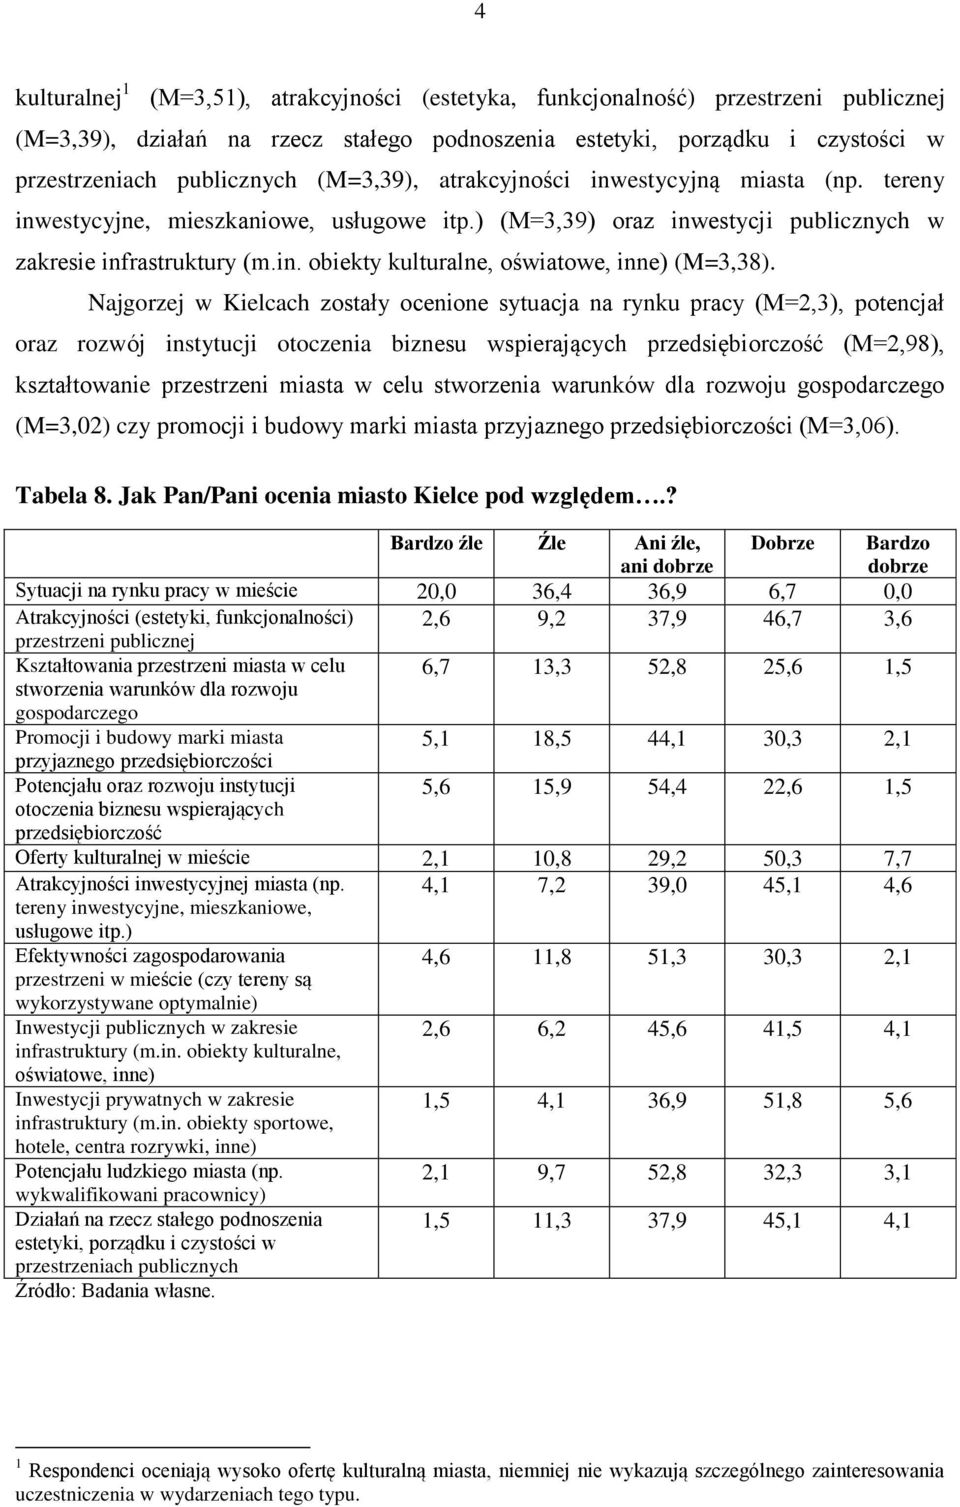 Najgorzej w Kielcach zostały ocenione sytuacja na rynku pracy (M=2,3), potencjał oraz rozwój instytucji otoczenia biznesu wspierających przedsiębiorczość (M=2,98), kształtowanie przestrzeni miasta w